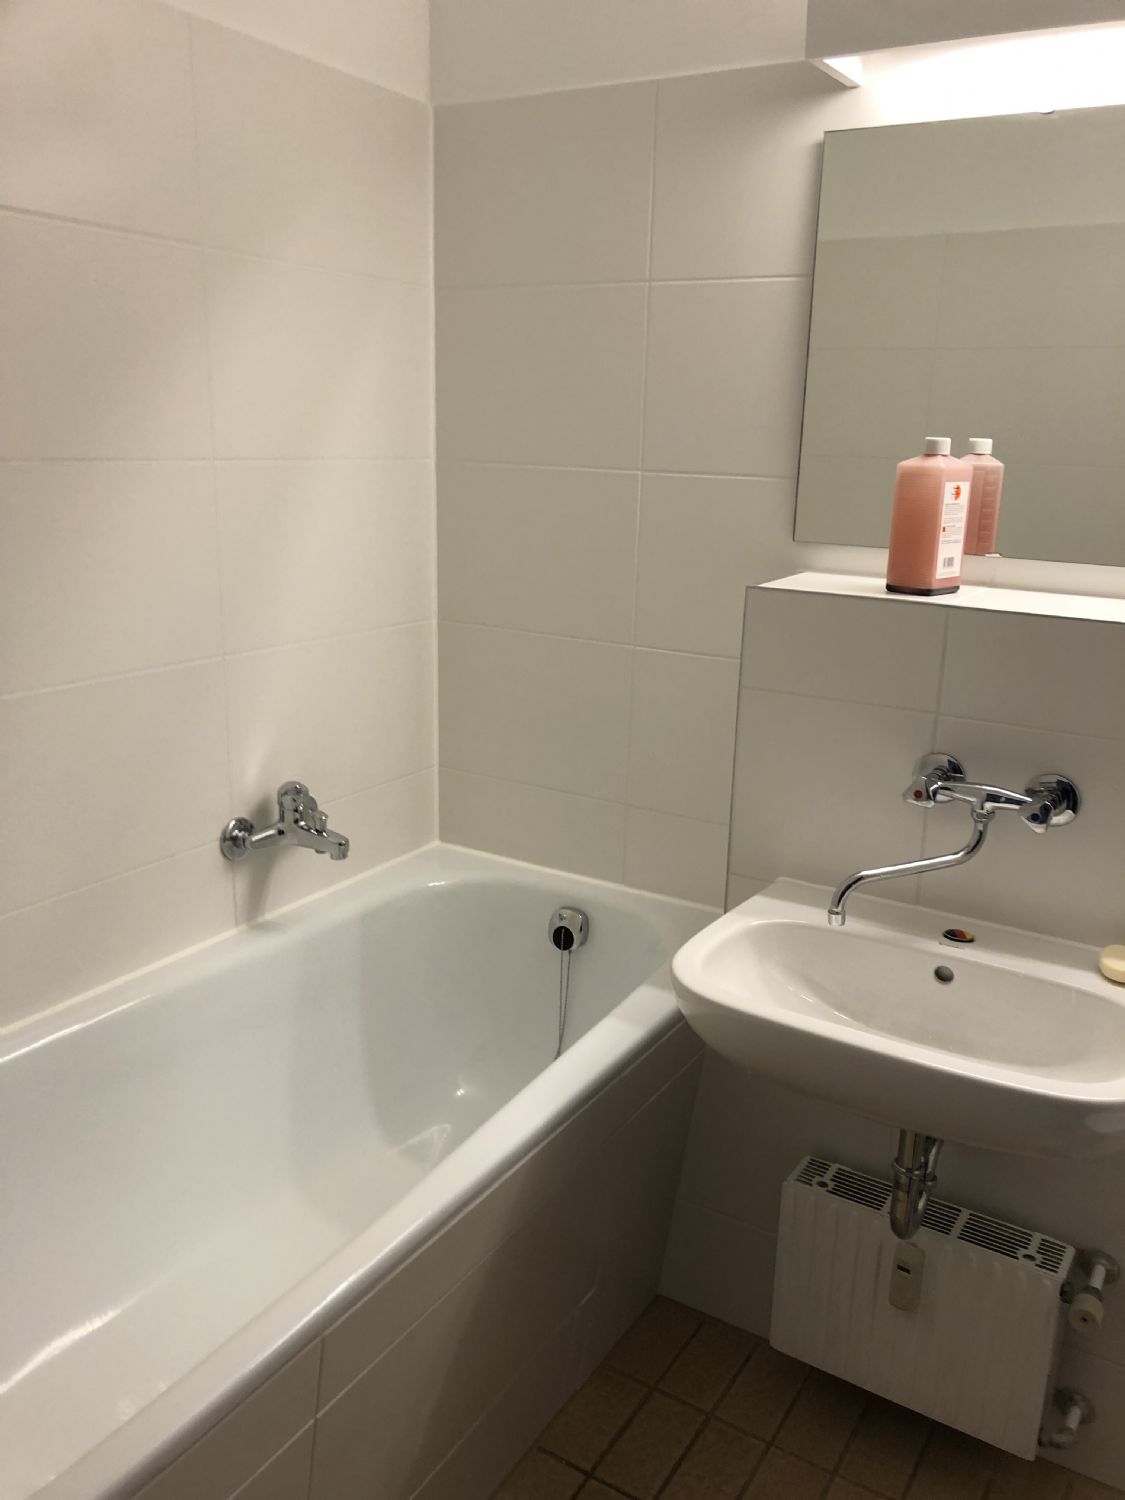 Frisch renoviertes Badezimmer, mit neuen Wandfliesen